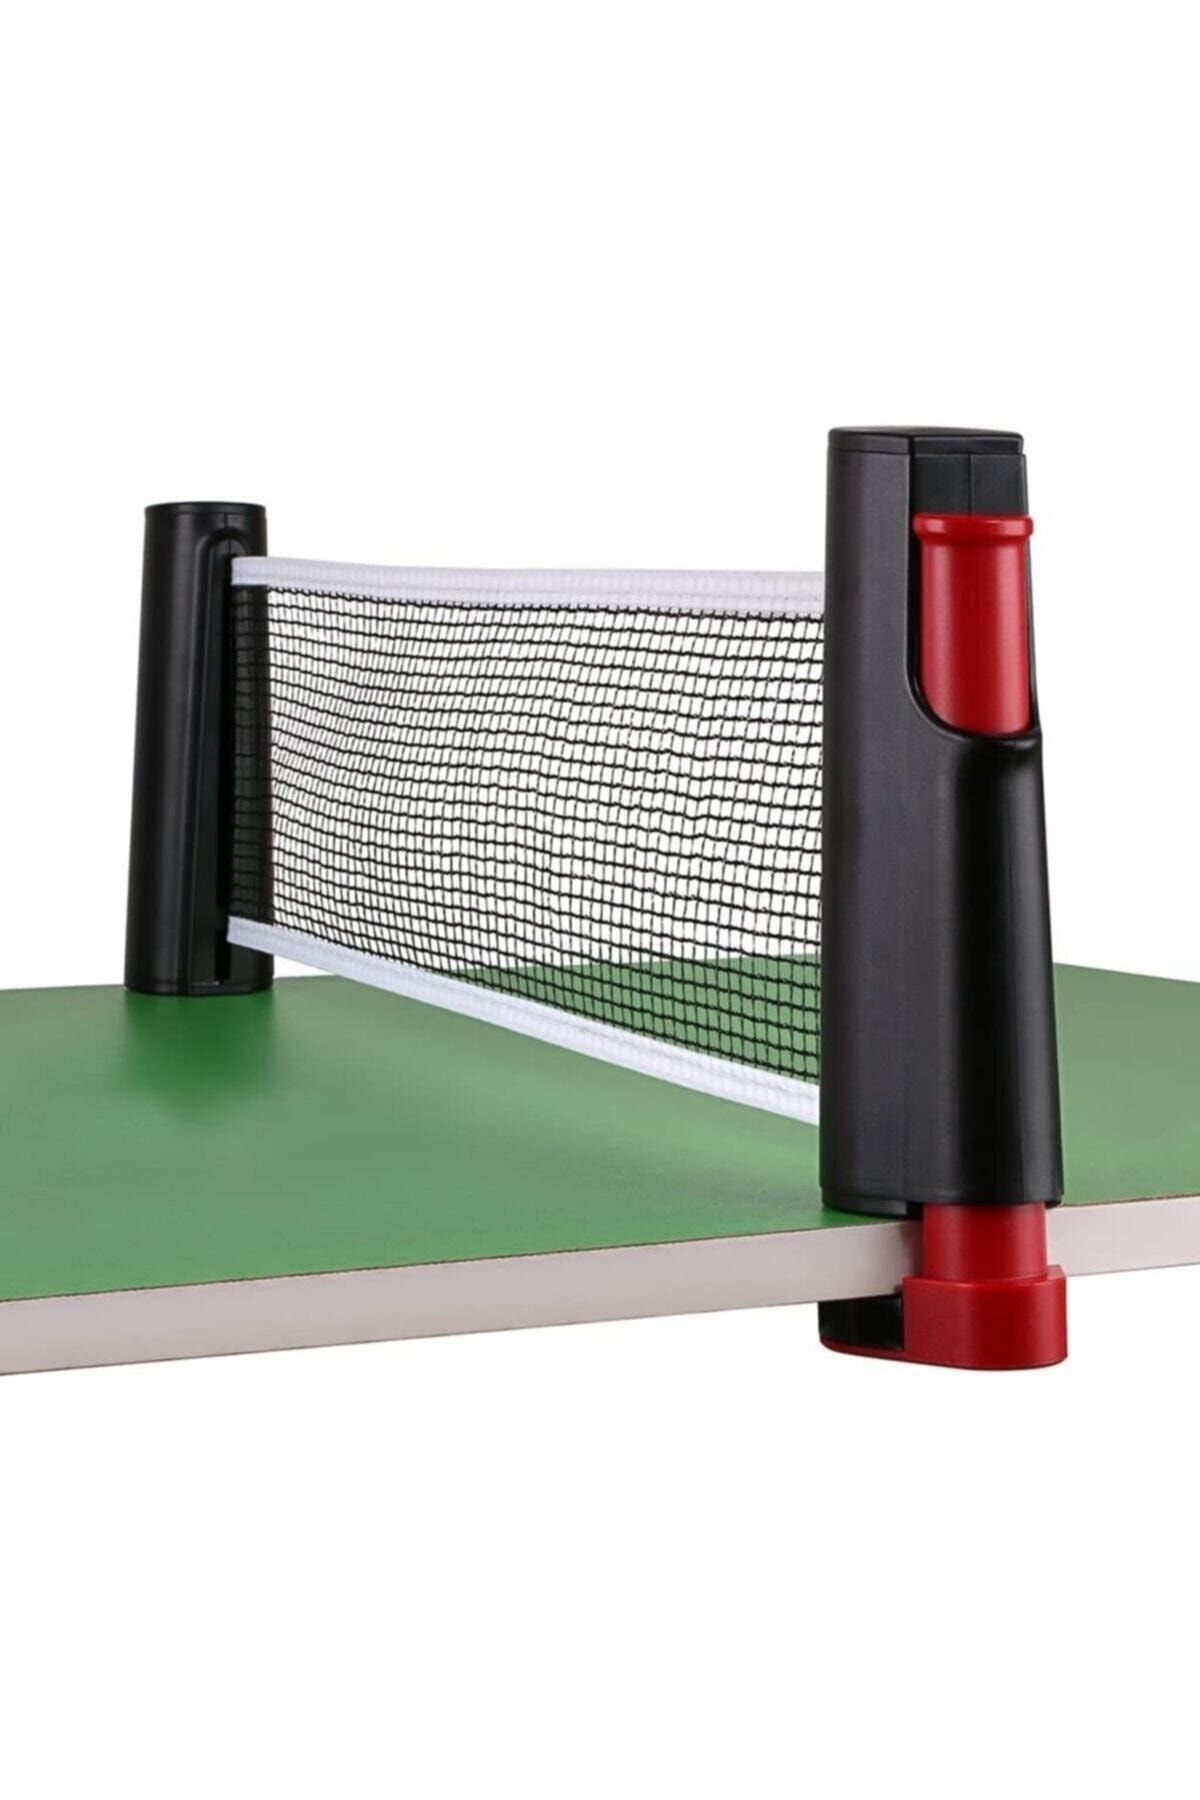 Clifton Kırmızı Siyah Tüm Masalara Uyumlu Mekanizmalı Masa Tenisi Filesi 2 Raket 3 Top Set